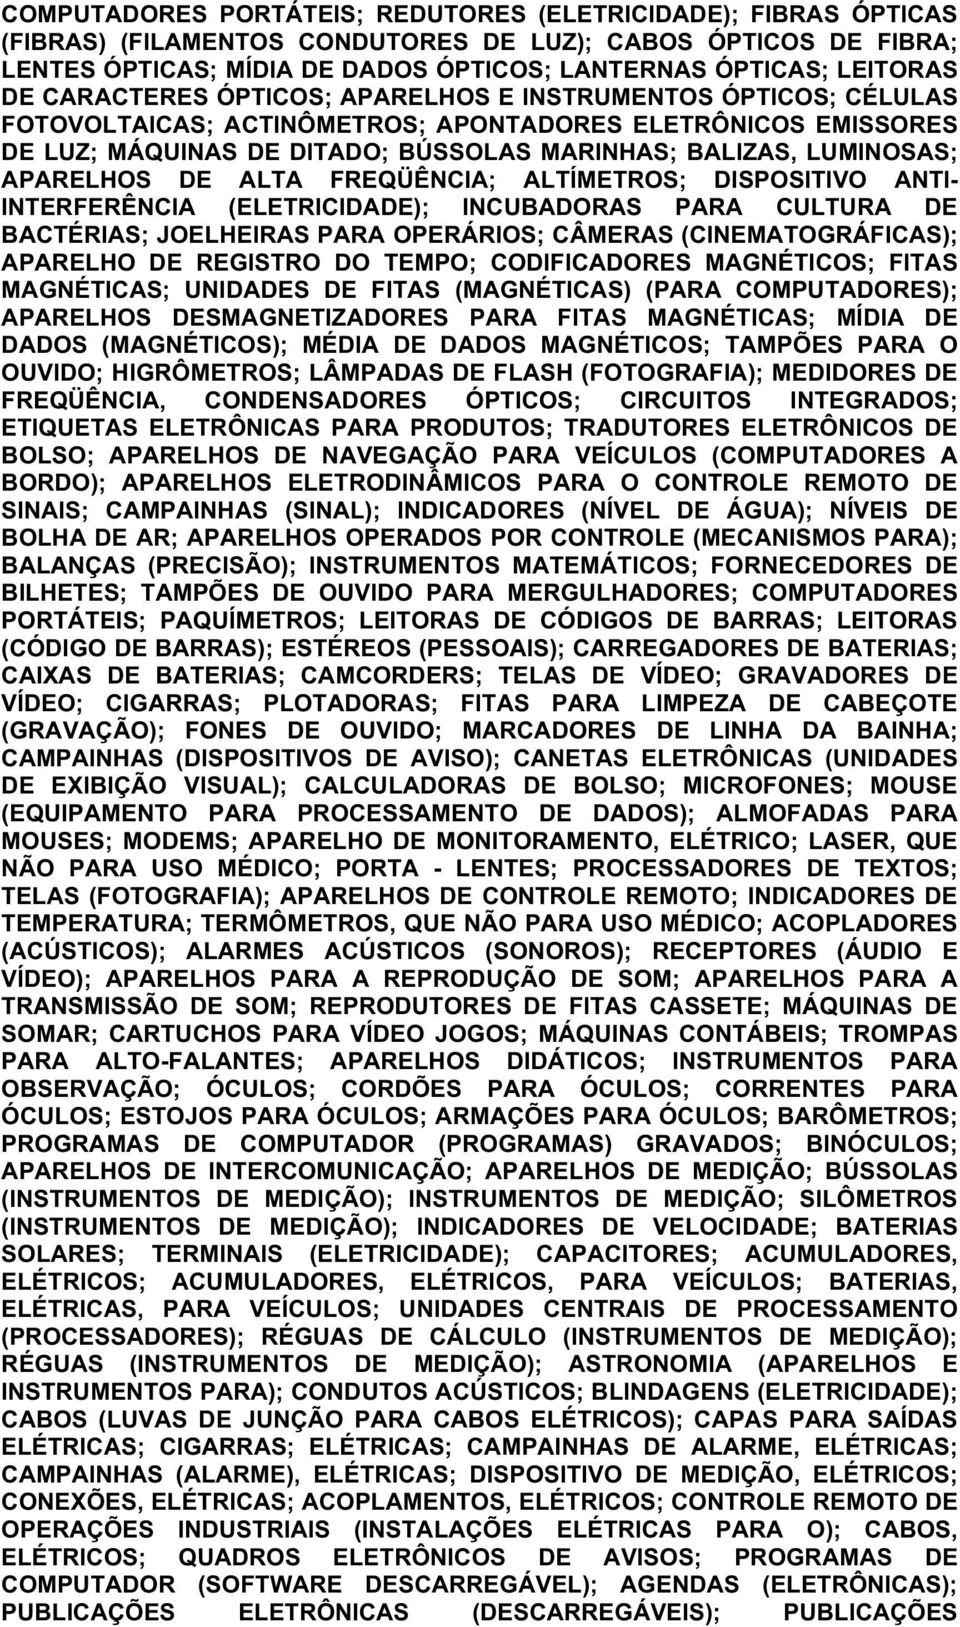 APARELHOS DE ALTA FREQÜÊNCIA; ALTÍMETROS; DISPOSITIVO ANTI- INTERFERÊNCIA (ELETRICIDADE); INCUBADORAS PARA CULTURA DE BACTÉRIAS; JOELHEIRAS PARA OPERÁRIOS; CÂMERAS (CINEMATOGRÁFICAS); APARELHO DE